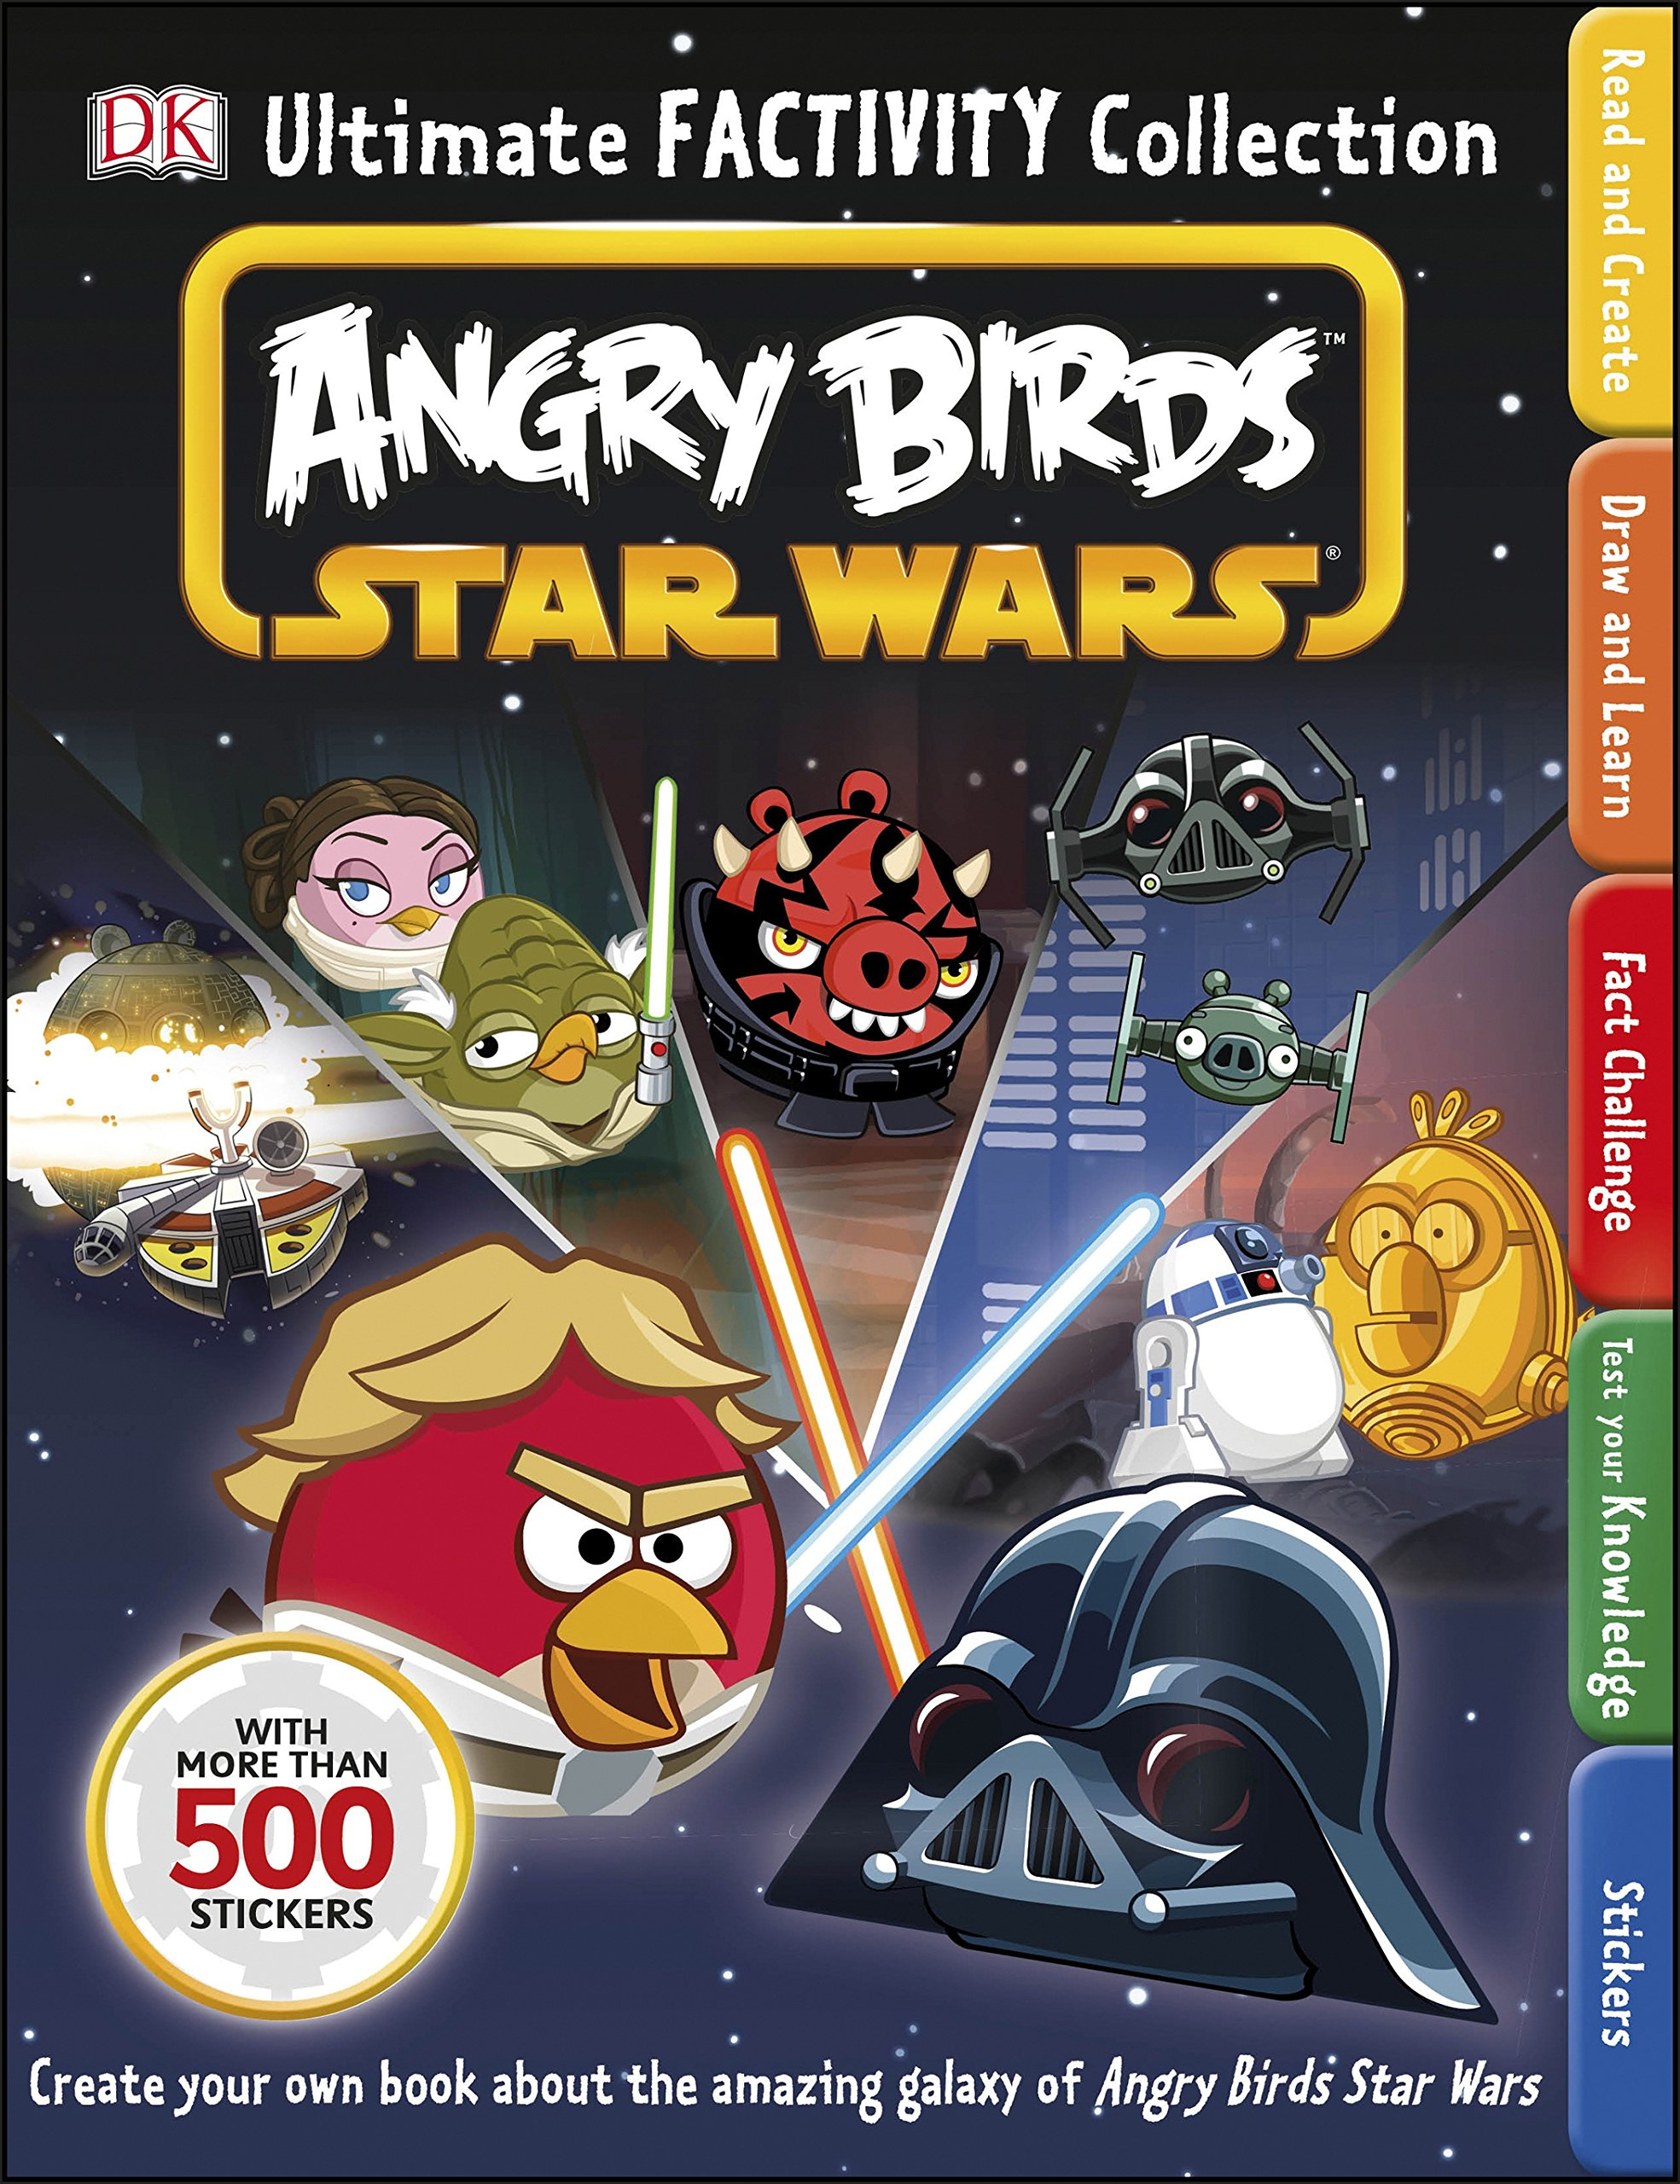 Starlit Adventures' quer ser 'Angry Birds' brasileiro com game no